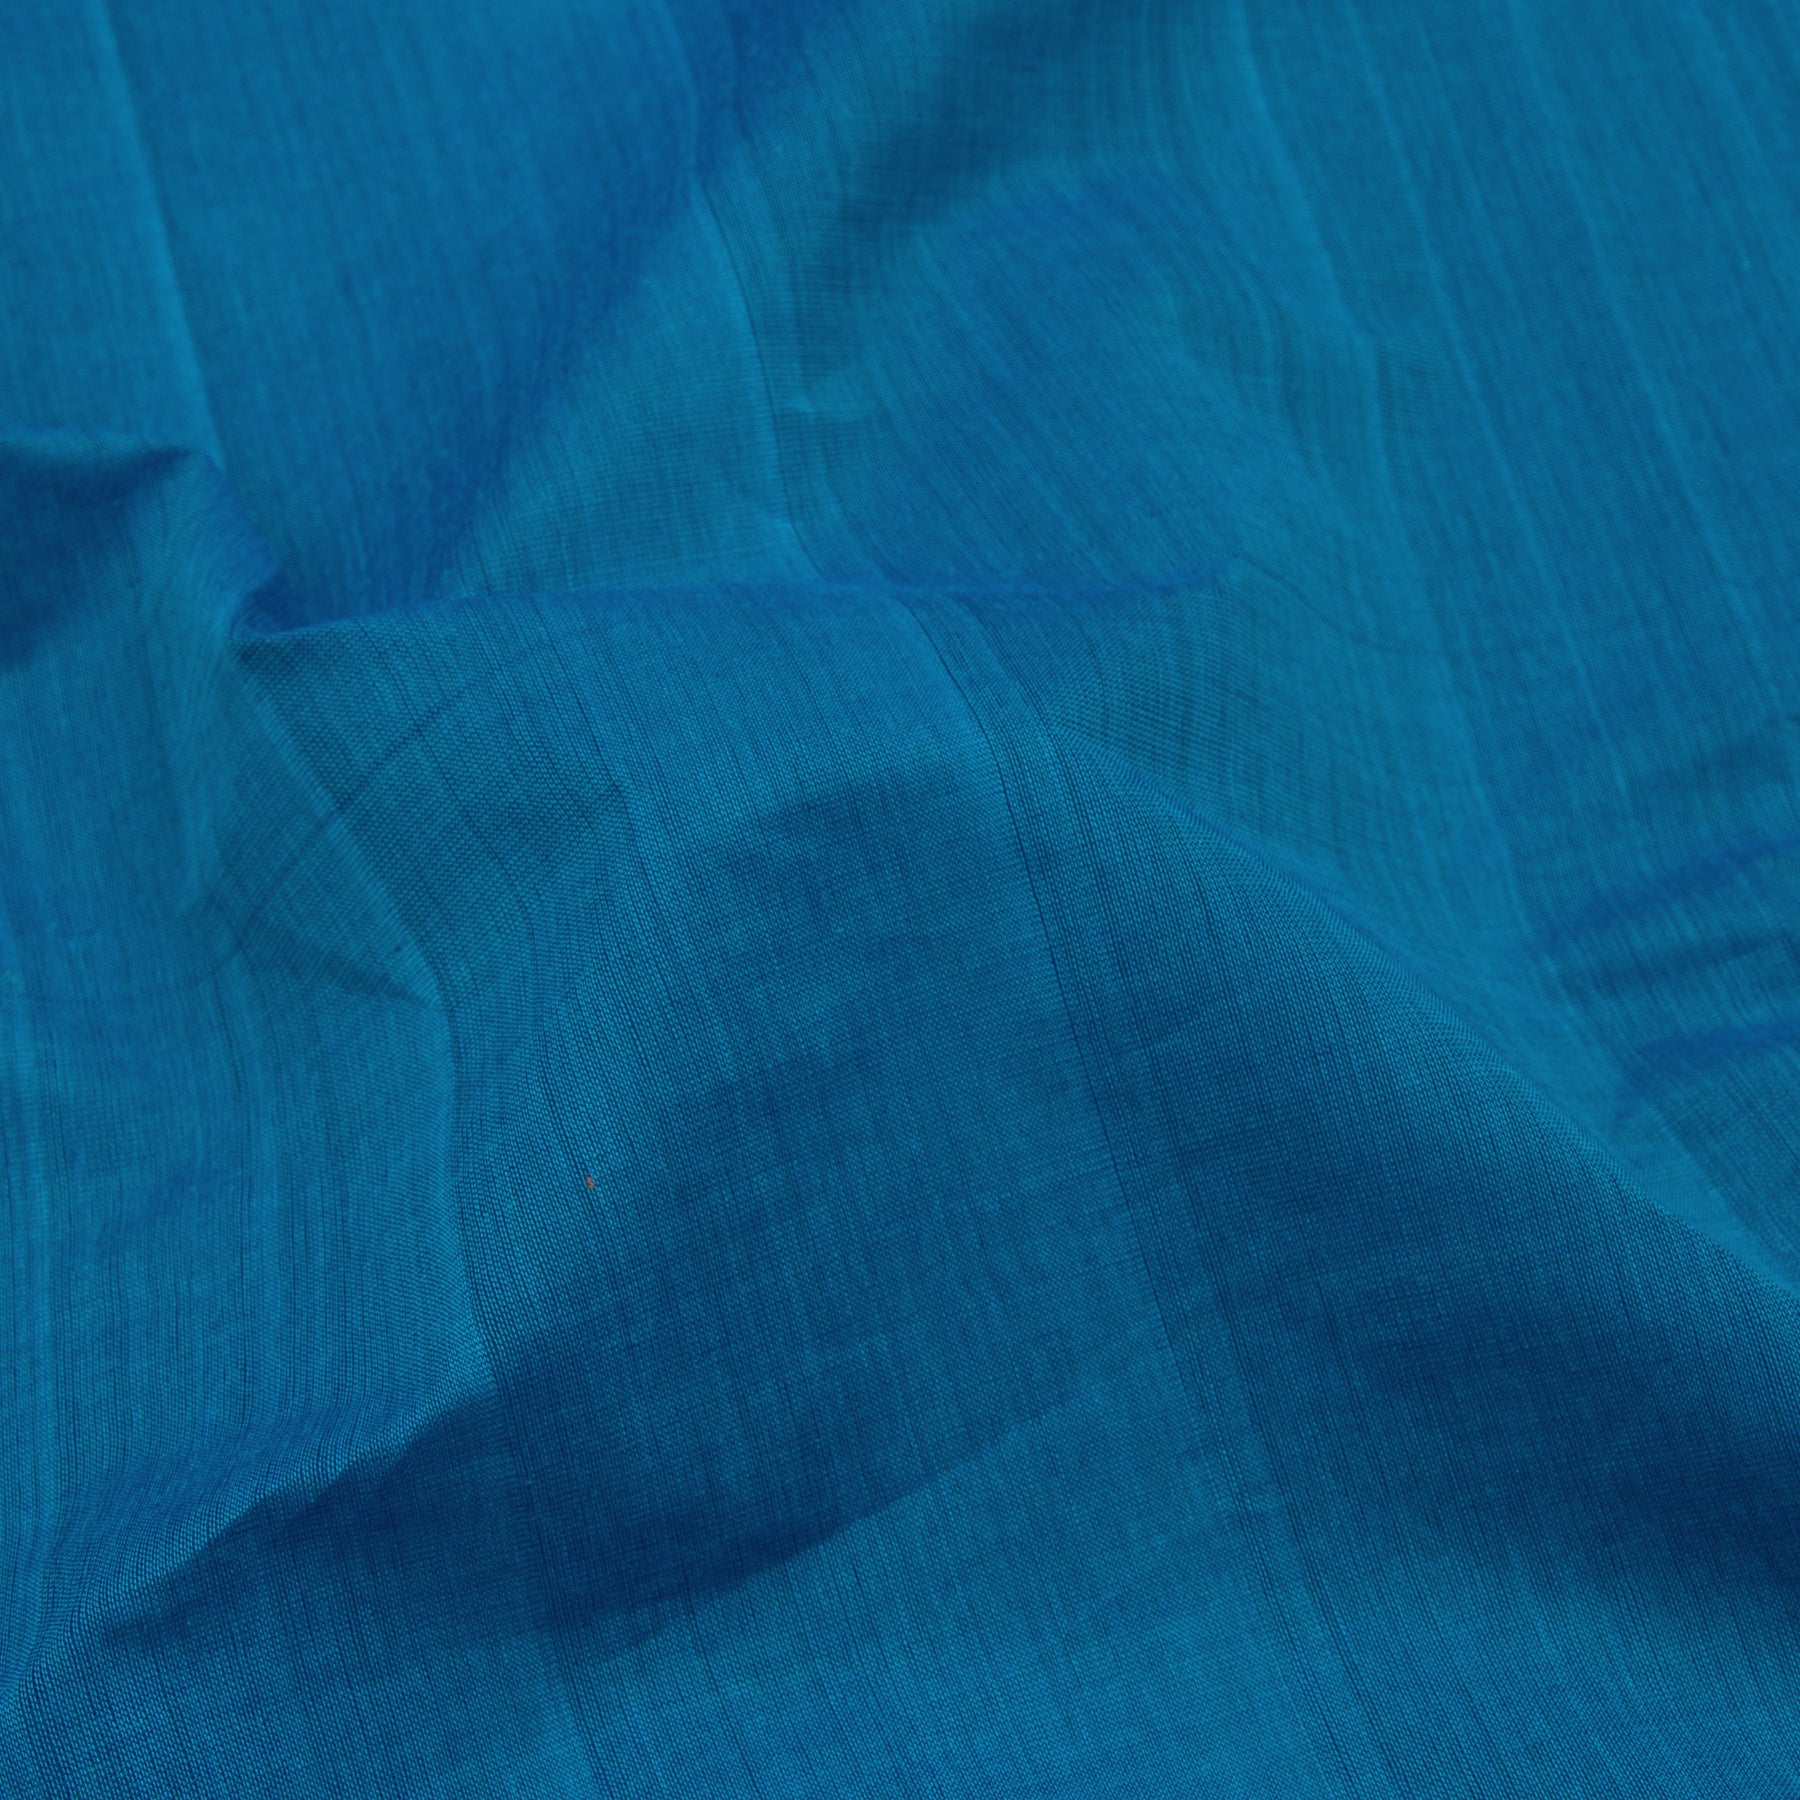 Kanakavalli Mangalgiri Cotton Sari 23-261-HS003-10941 - Fabric View